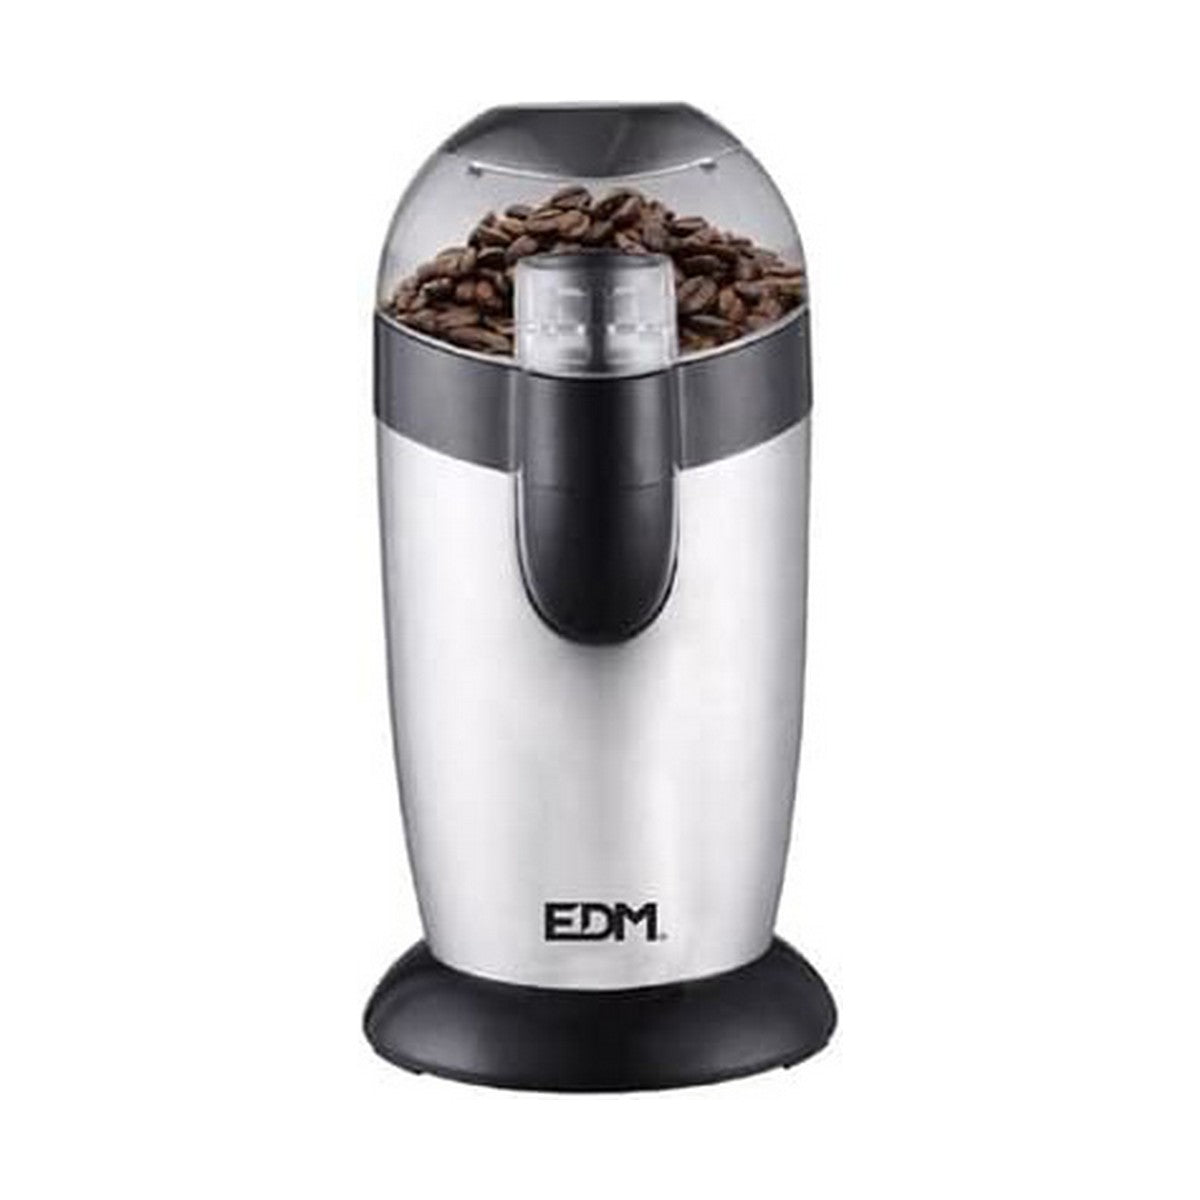 Coffee Grinder EDM 120 W - KXX  TI.CO